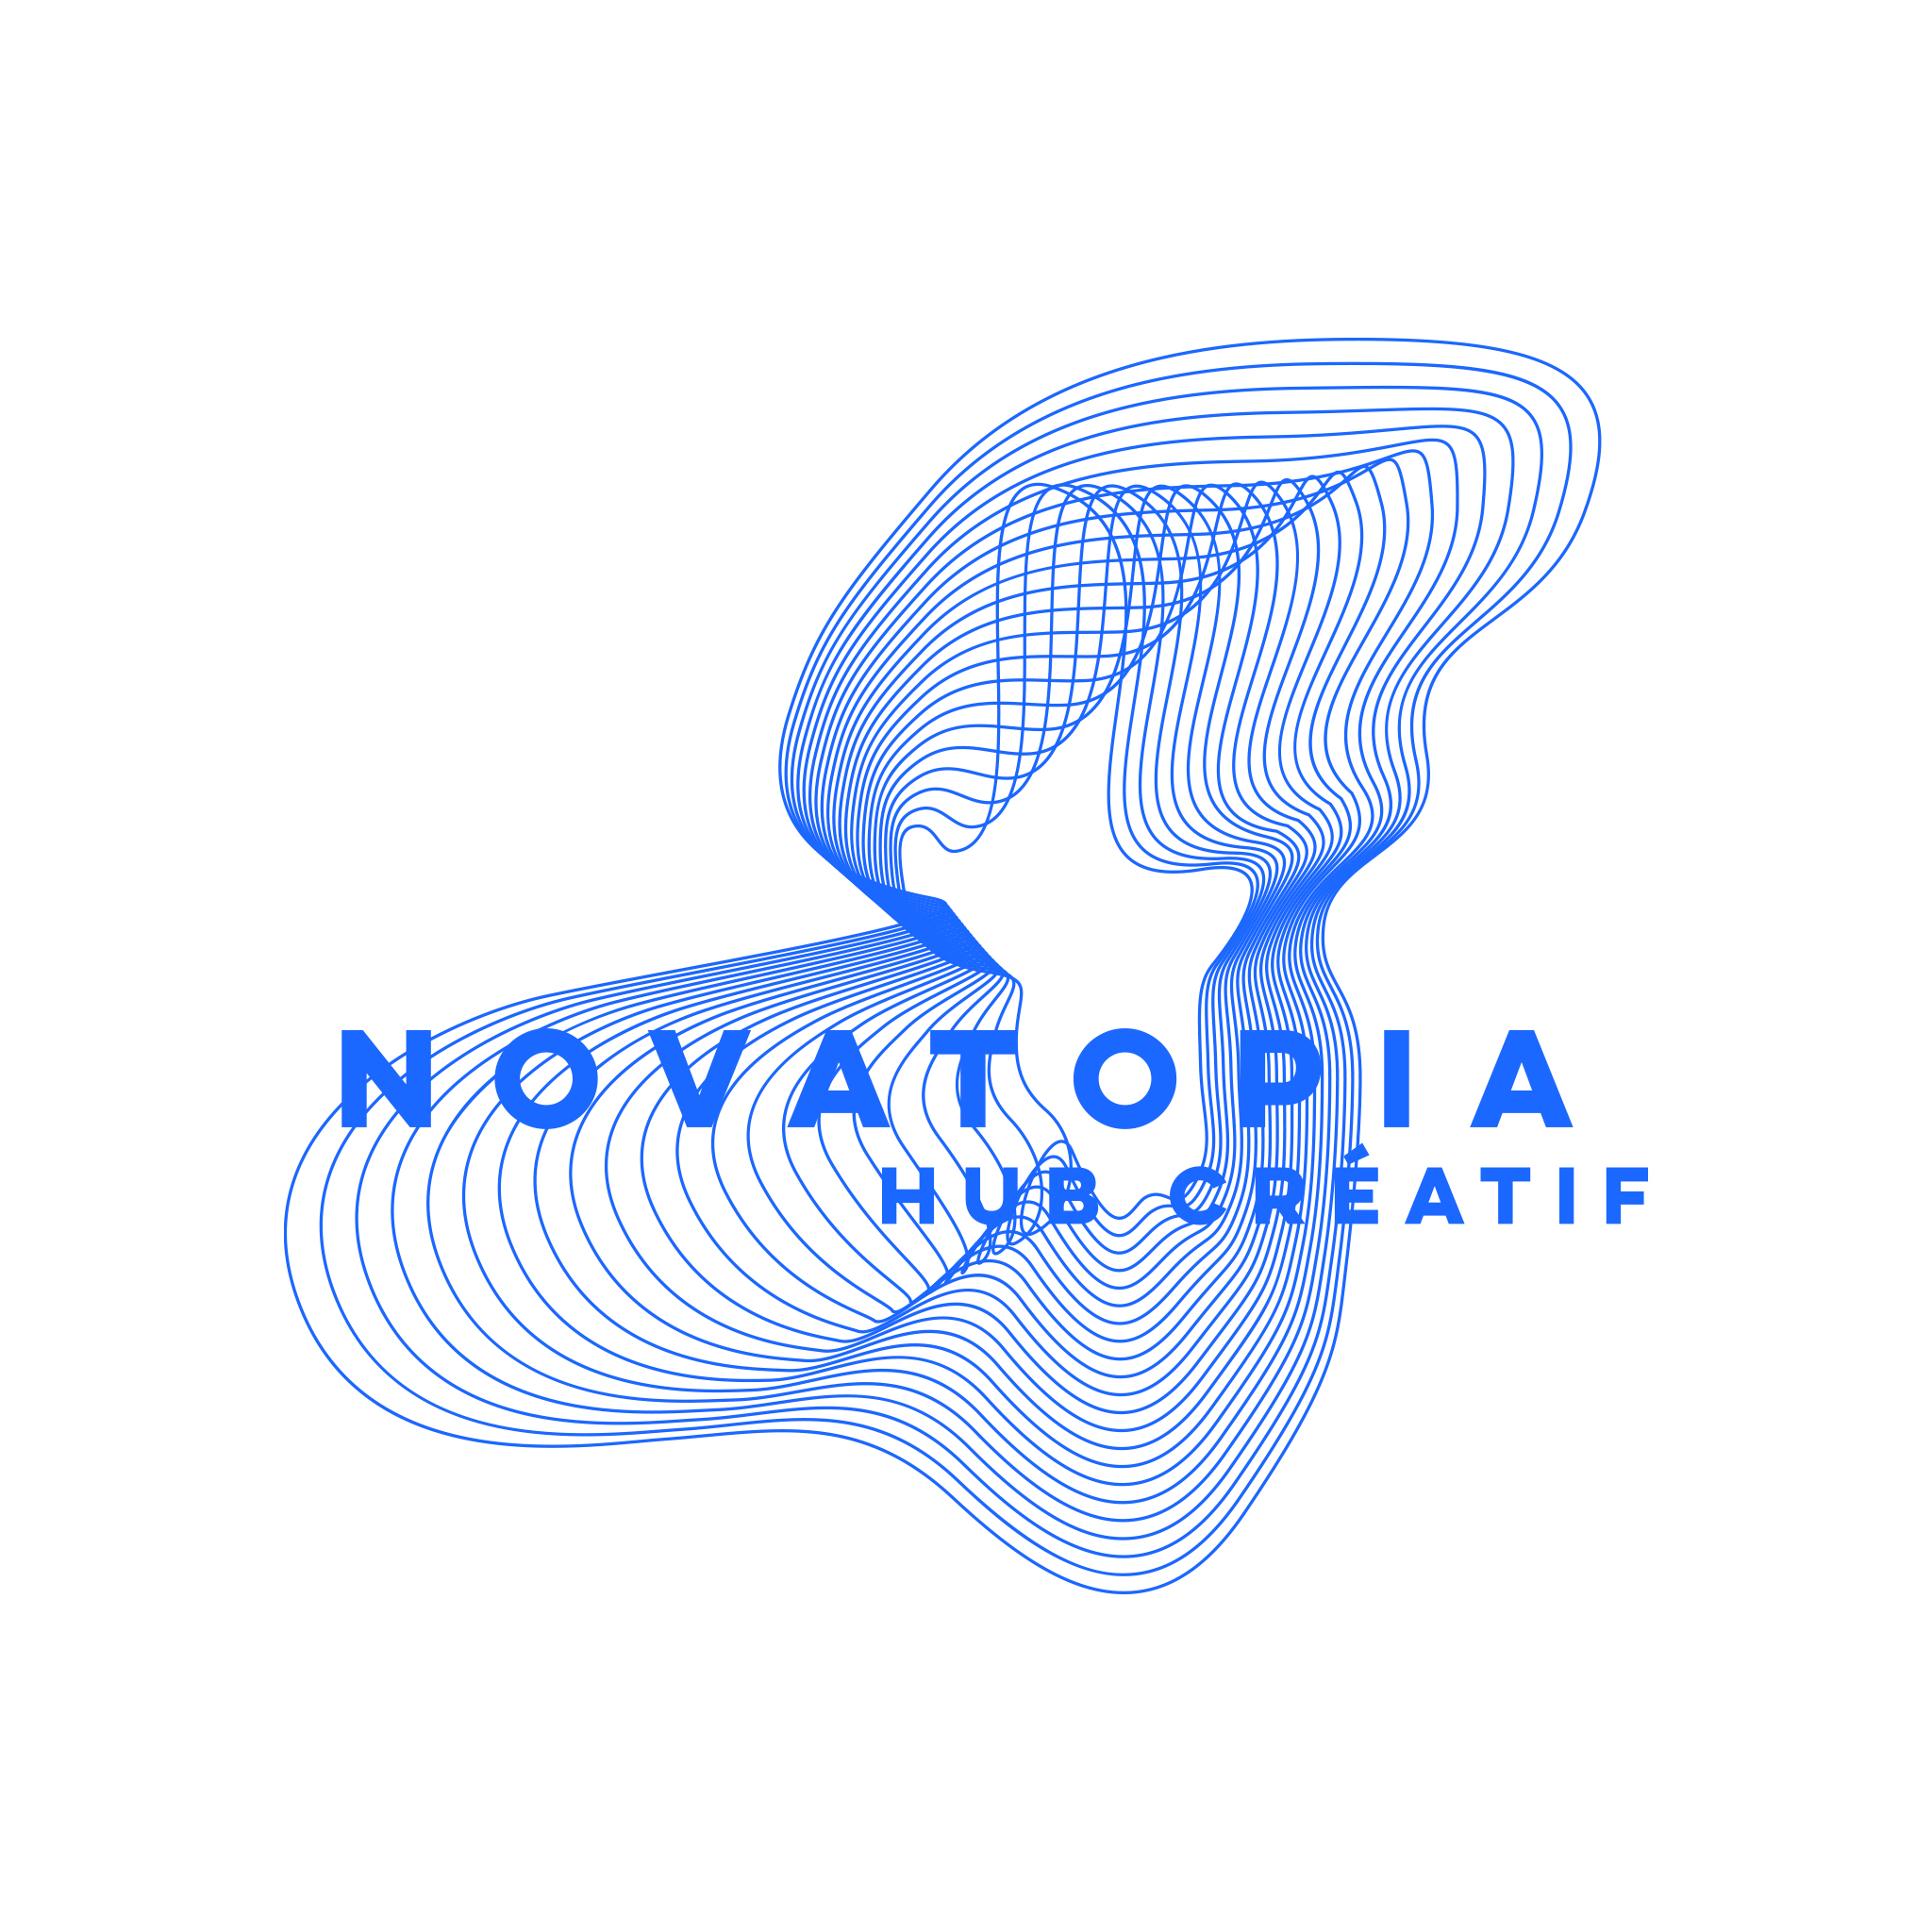 autograff-design-graphique-graphiste-toulouse-france-logo-bleu-identite-novatopia-hub-creatif